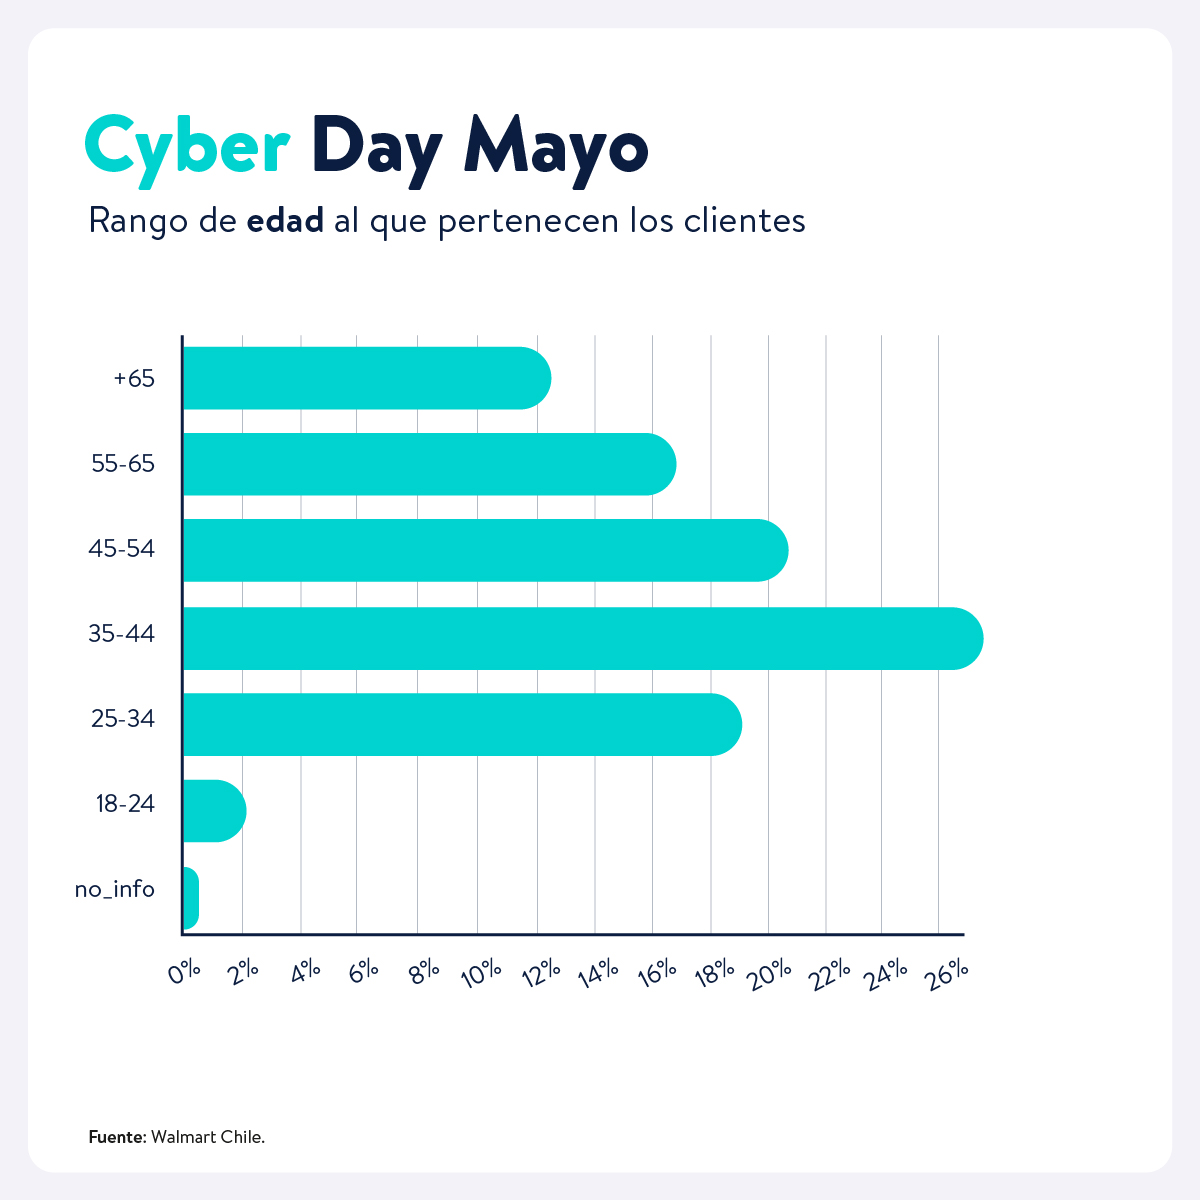 Cyber Day Mayo - Rango de edad al que pertenecen los clientes